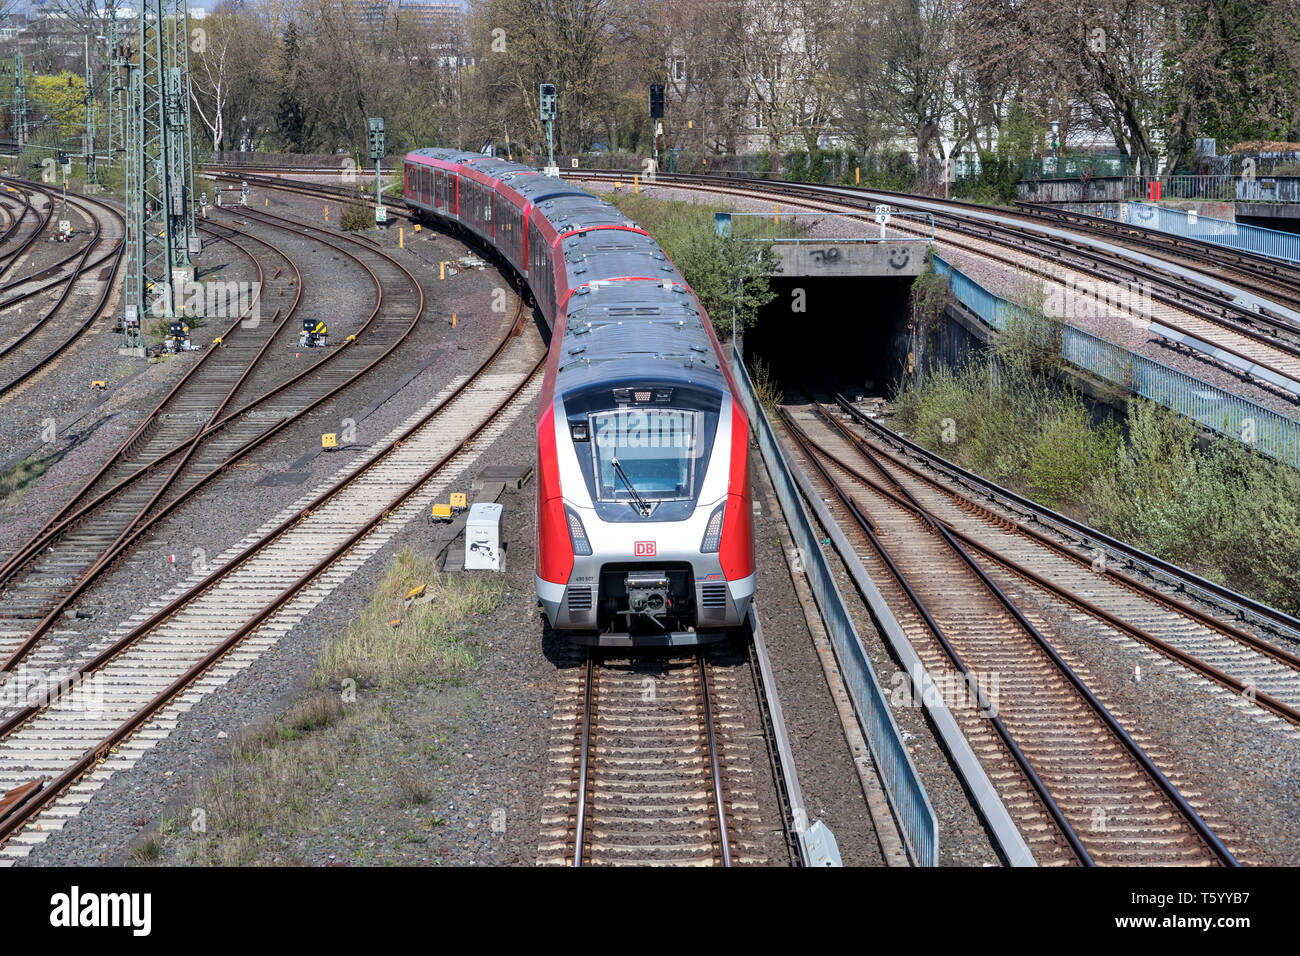 490 classe de train S-Bahn de Hambourg, de transport en commun rapide du réseau ferroviaire dans la région métropolitaine de Hambourg. Banque D'Images